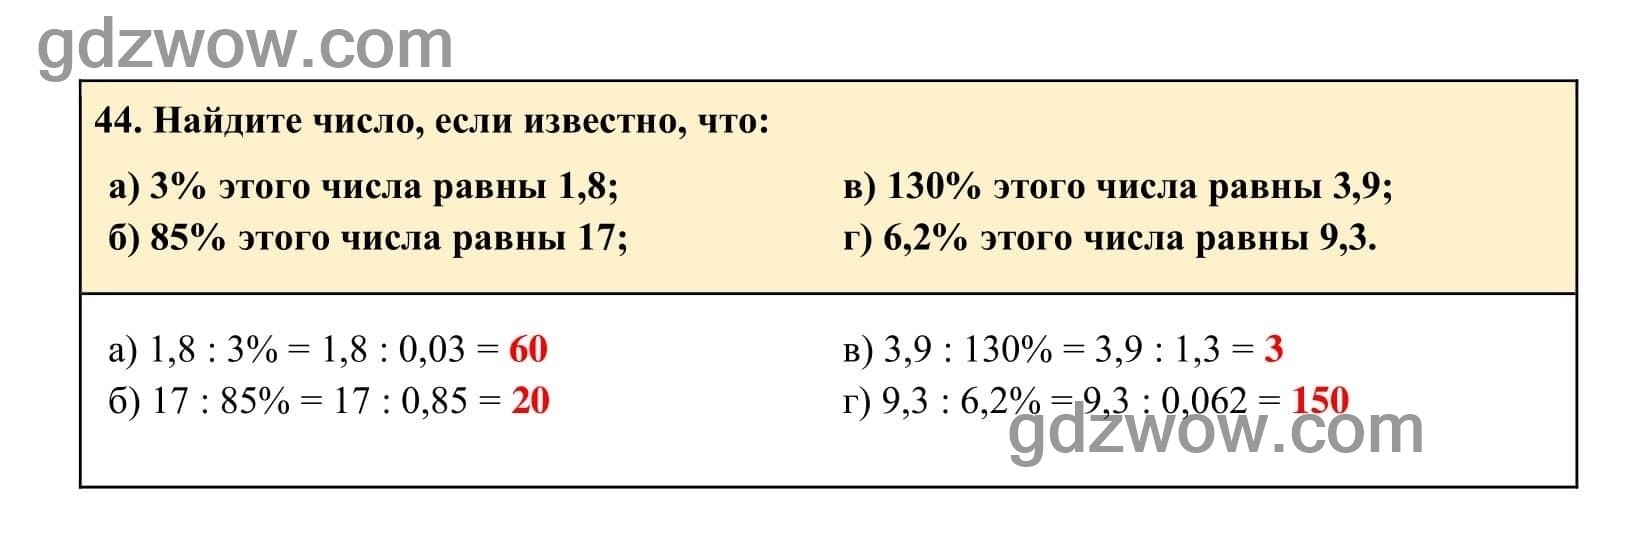 Упражнение 44 - ГДЗ по Алгебре 7 класс Учебник Макарычев (решебник) - GDZwow